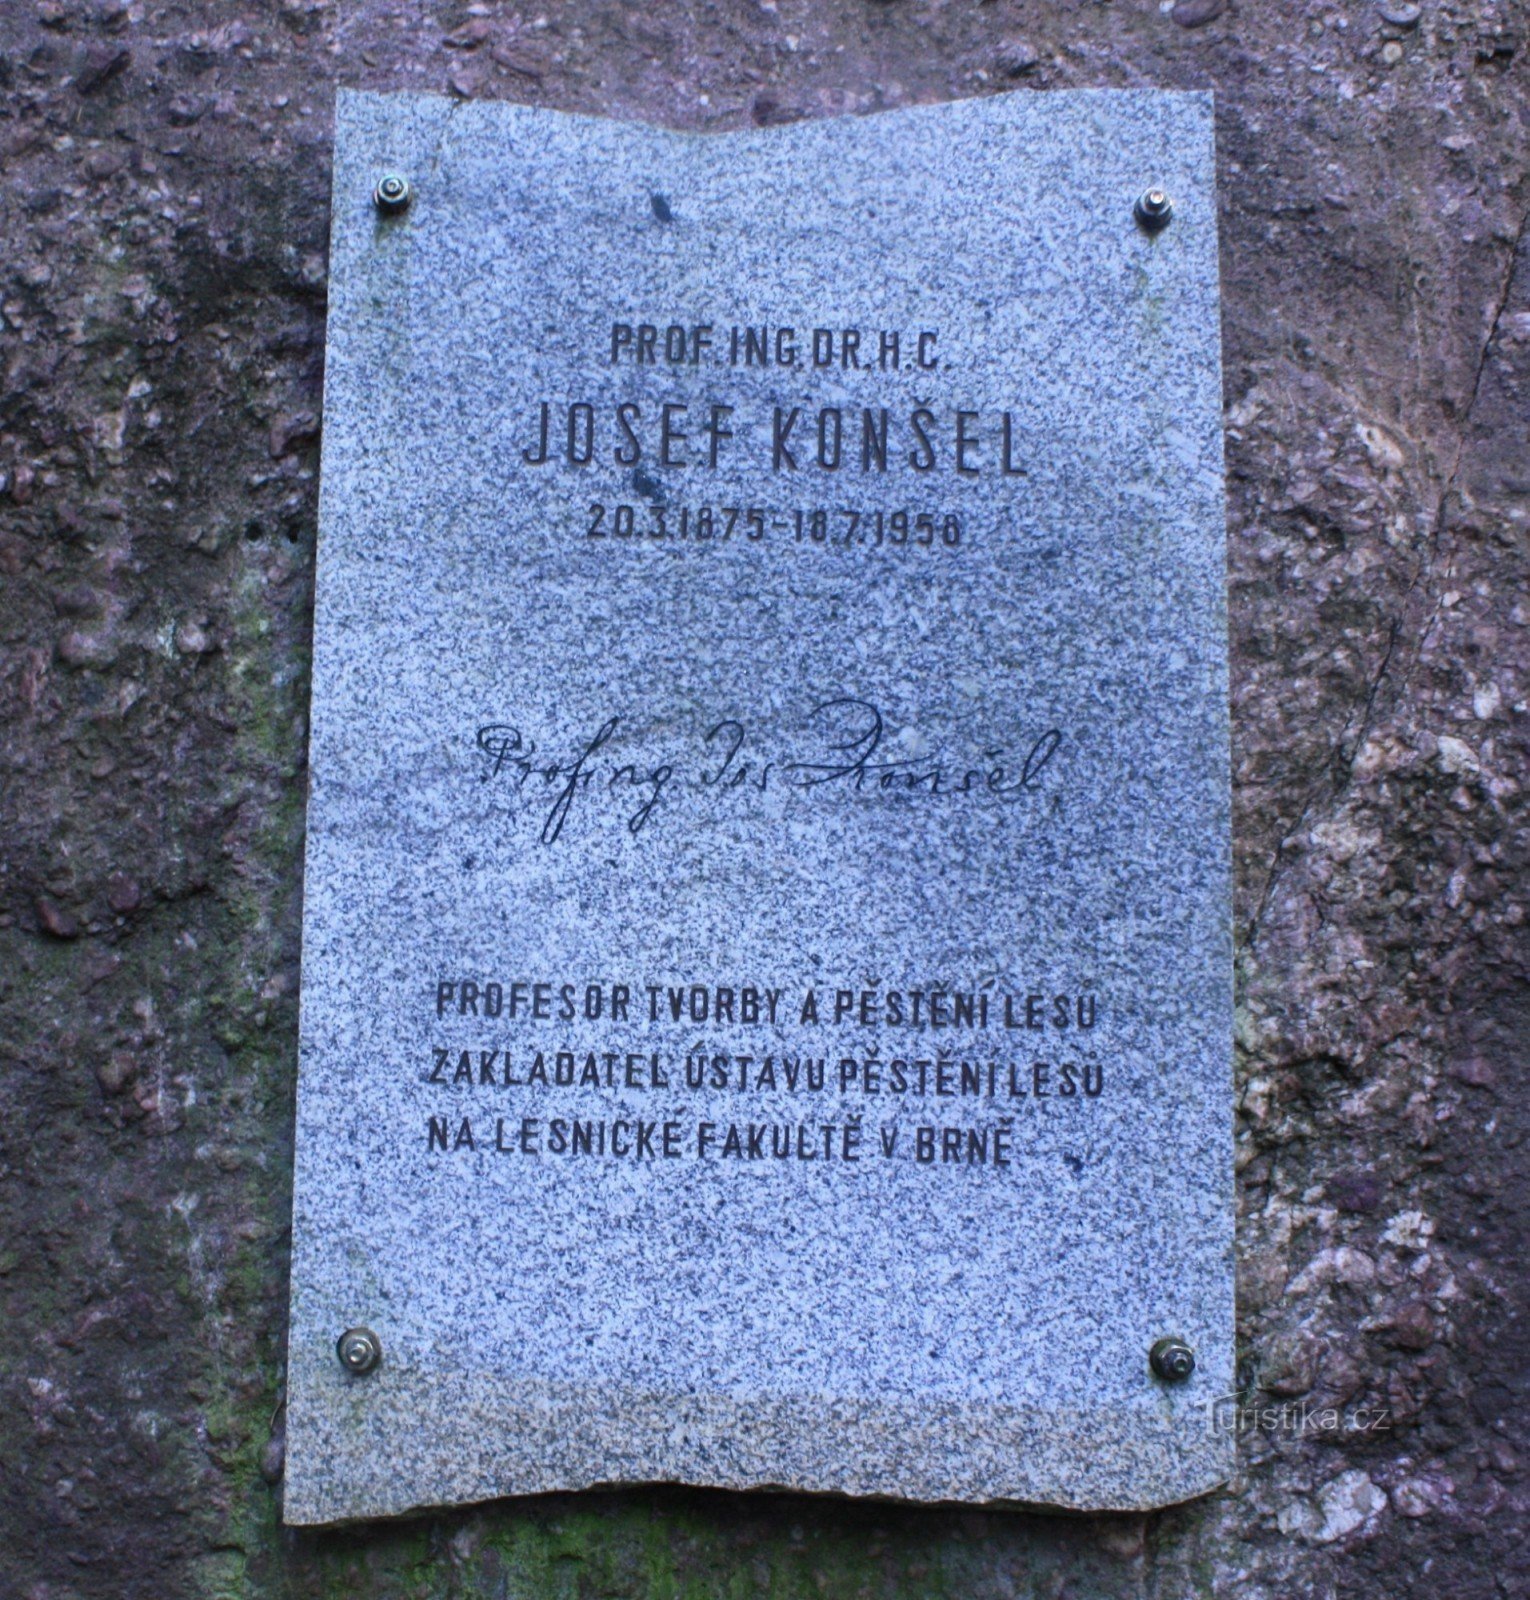 Monument à Josef Konšel